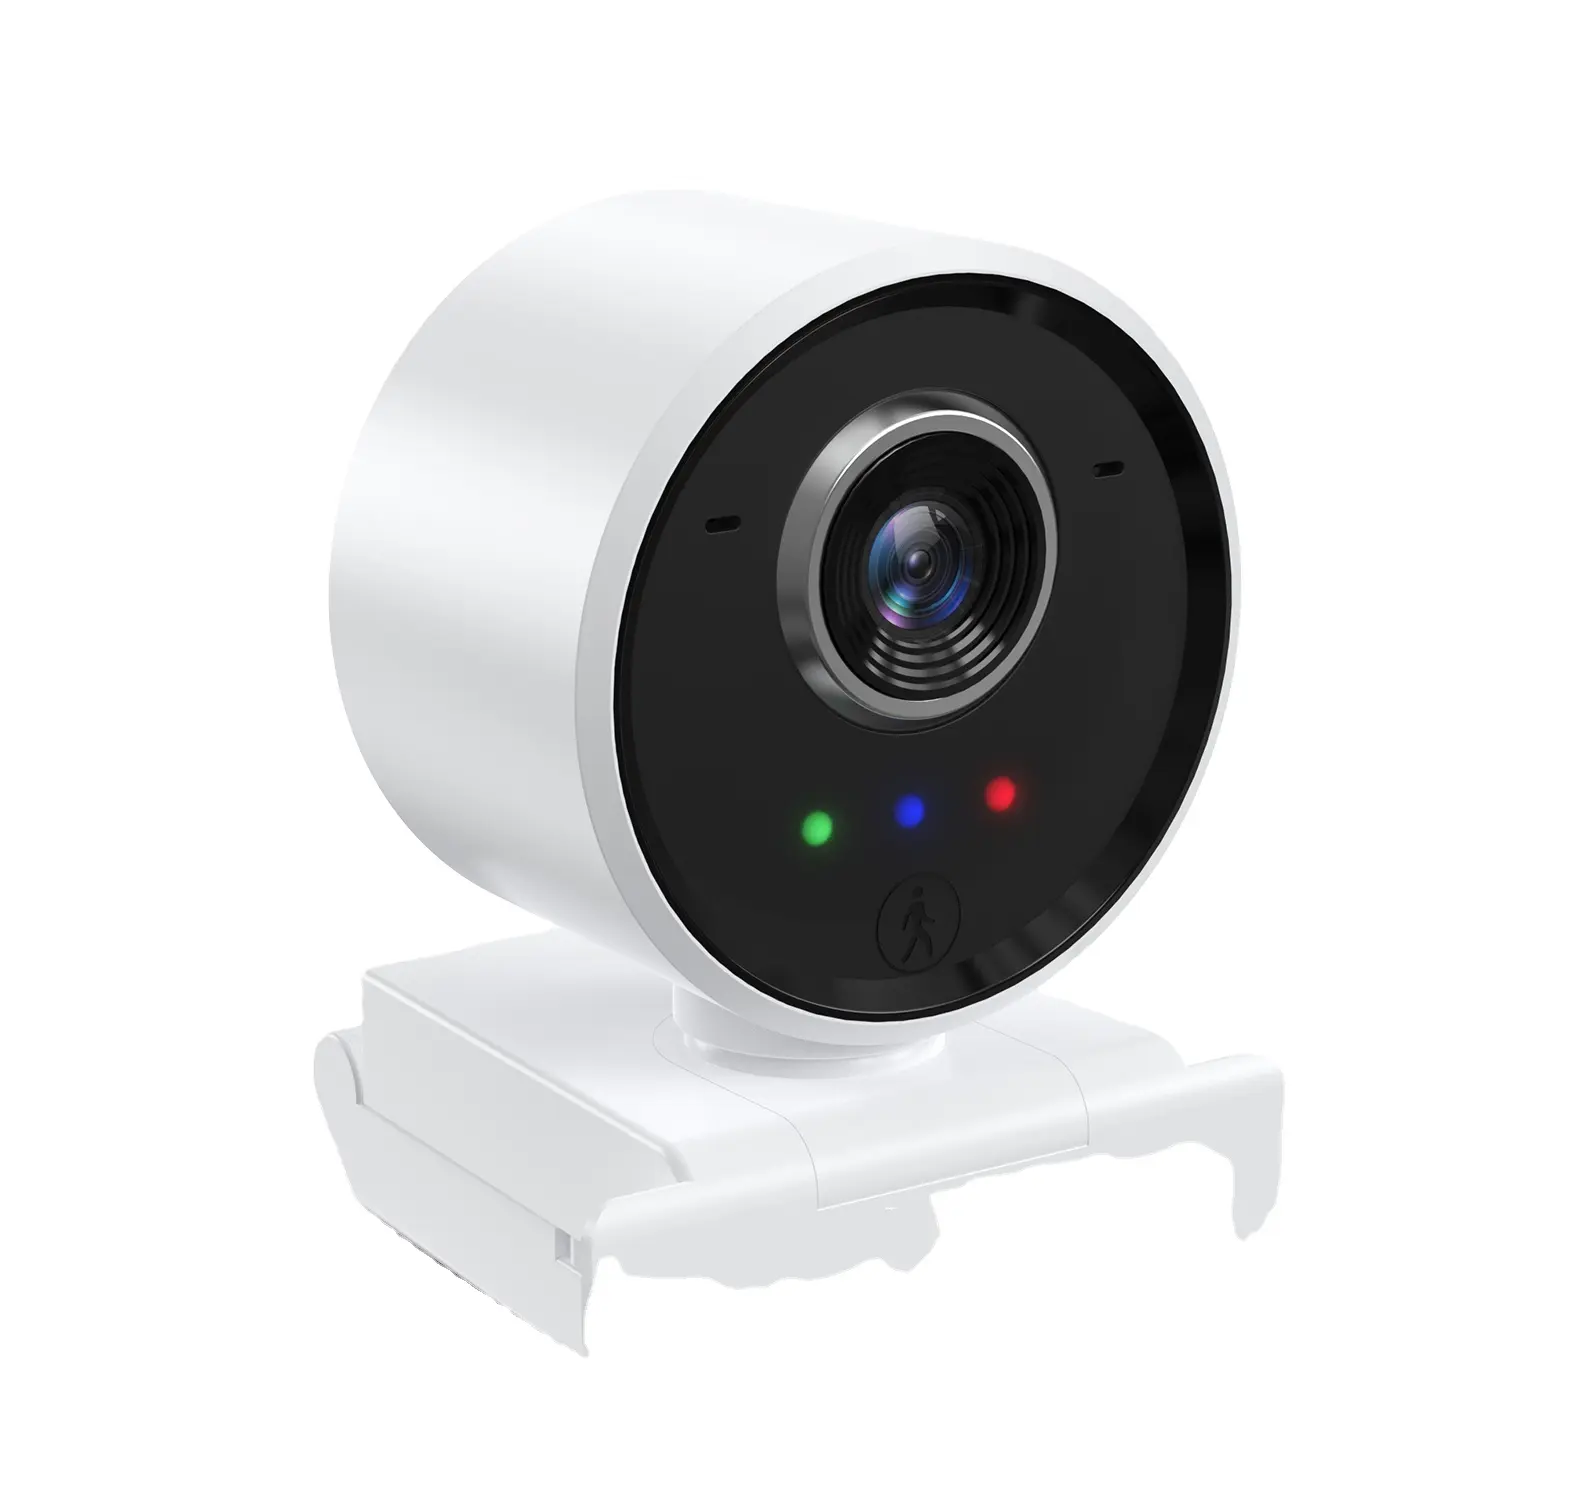 Innotronik WebCam 1080シリーズヒューマントラッキングオートフォーカスWebカメラは、リモコン付きのさまざまなビデオ会議ソフトウェアをサポートします